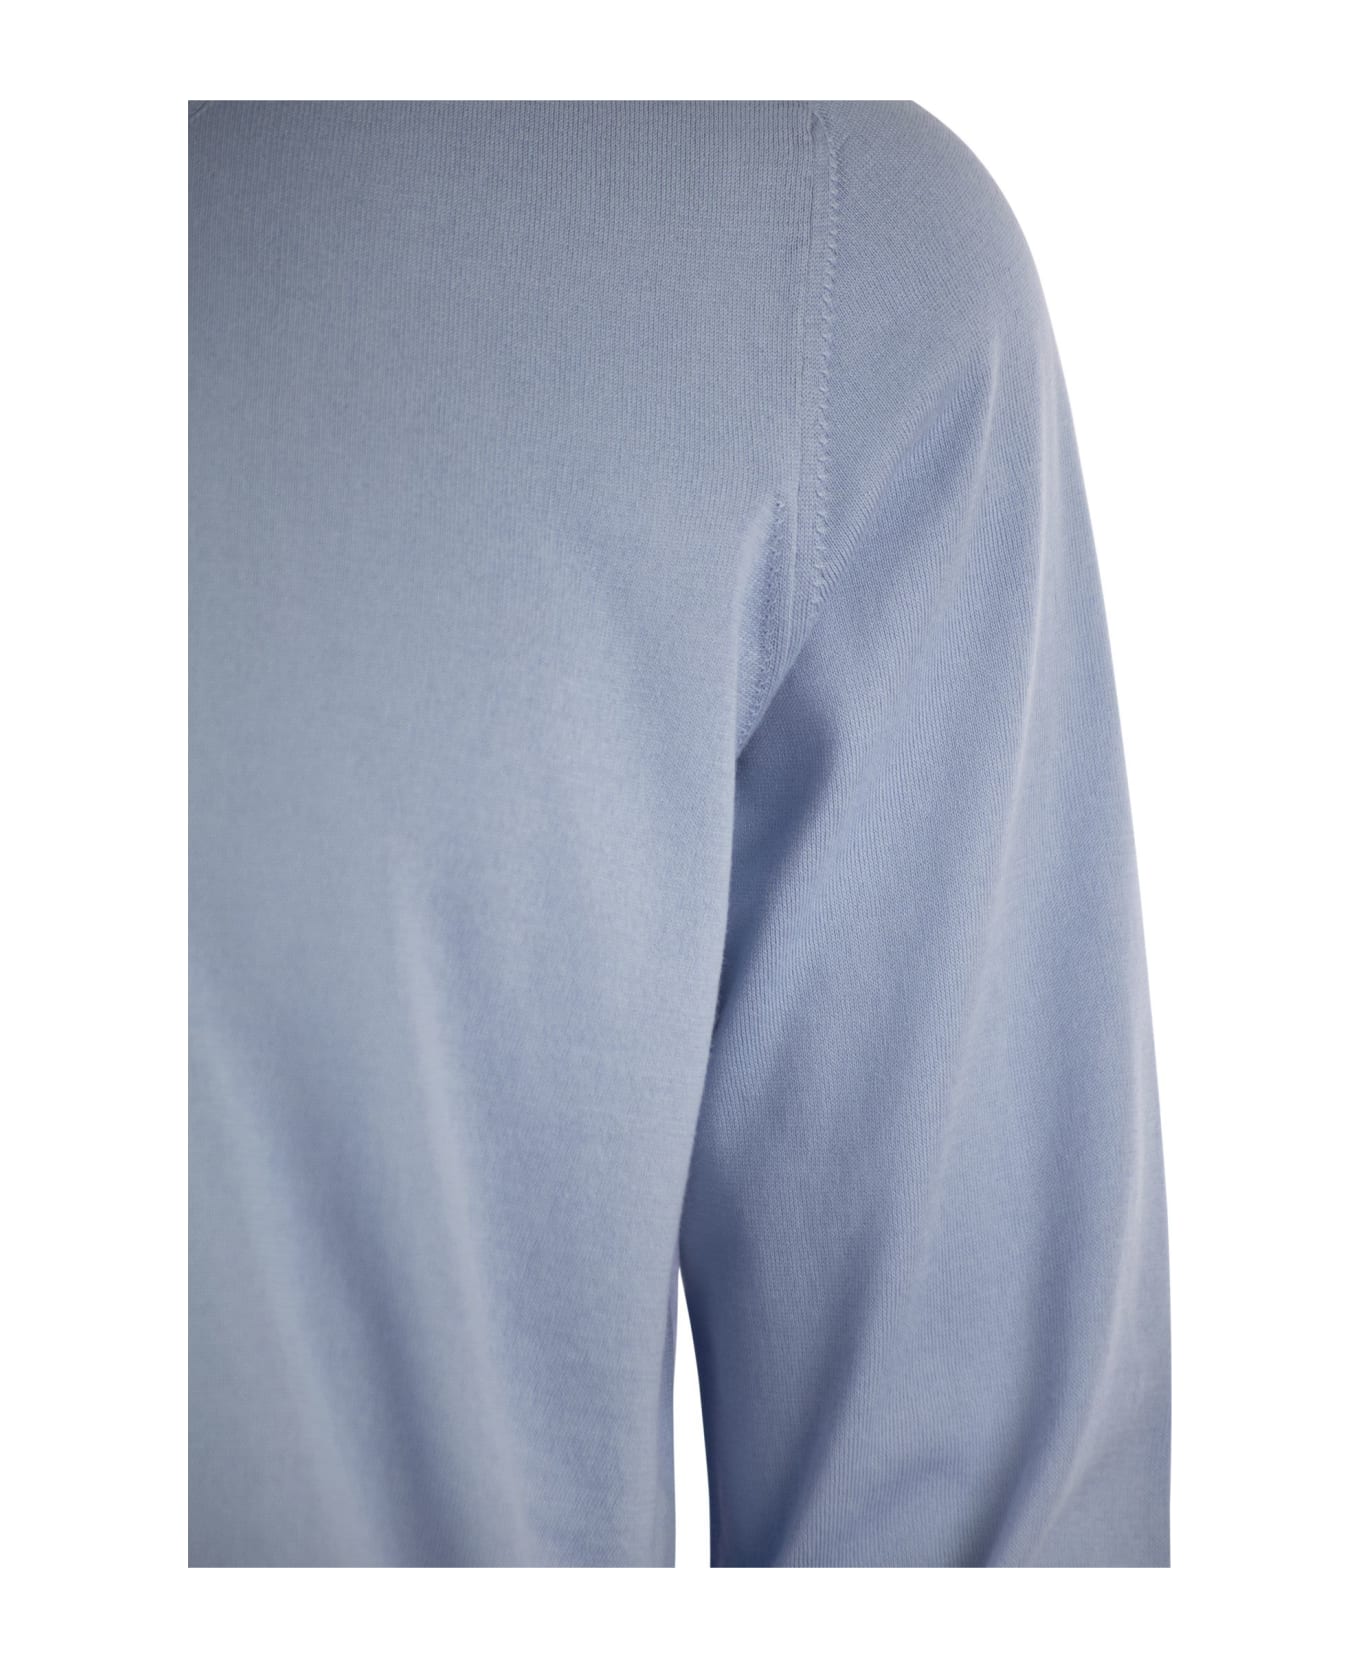 Brunello Cucinelli Lightweight Cotton Jersey - Light Blue フリース